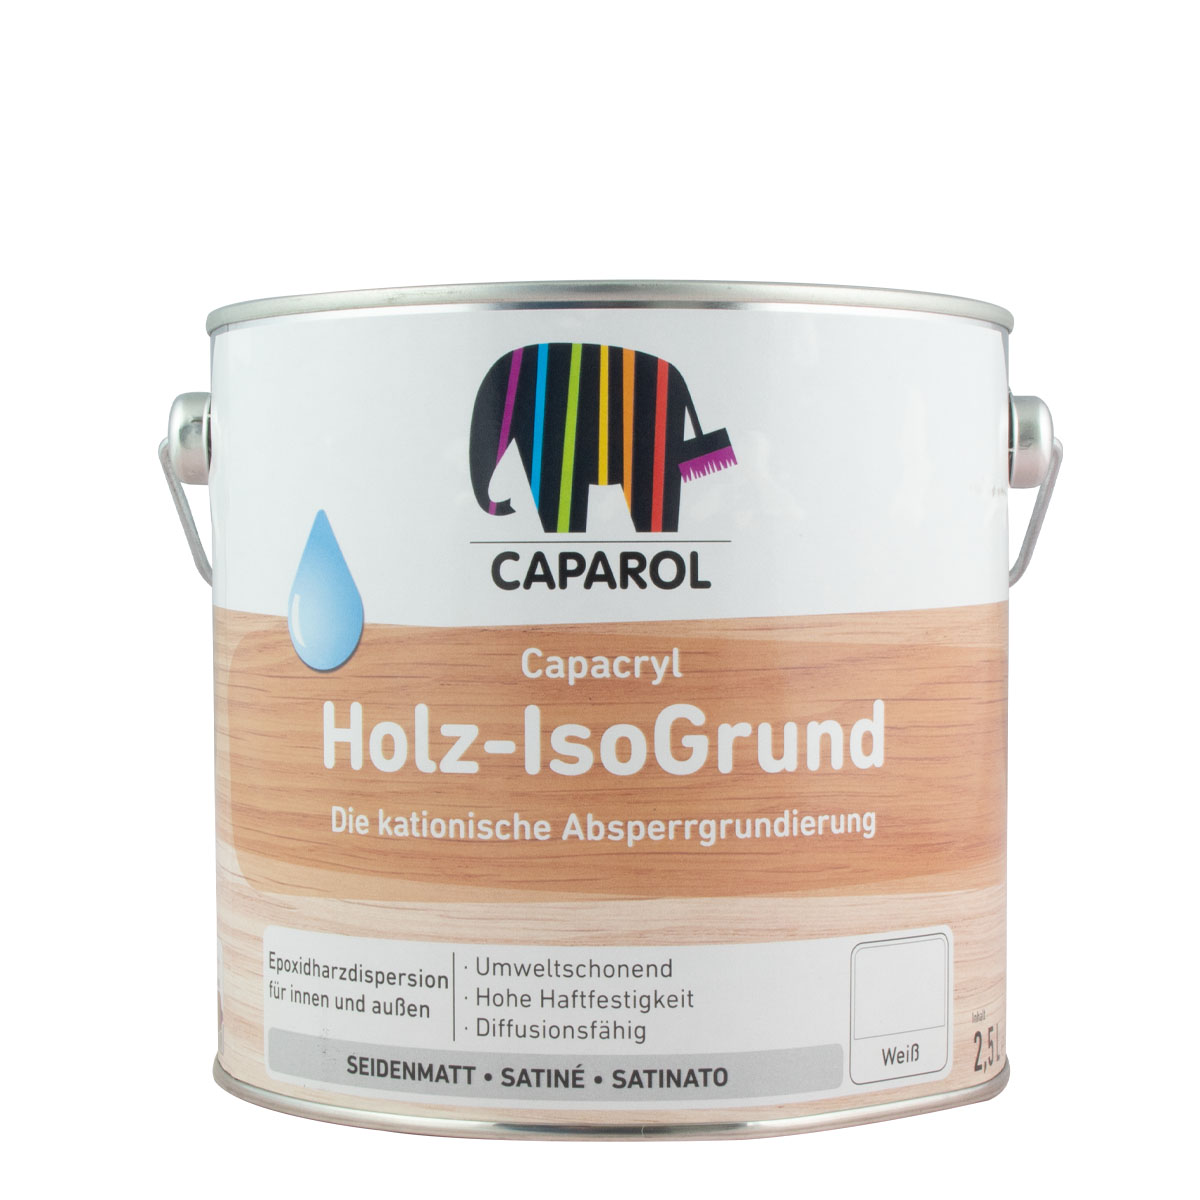 Caparol Capacryl Holz-Isogrund, 2,5L weiß ,Absperrgrundierung